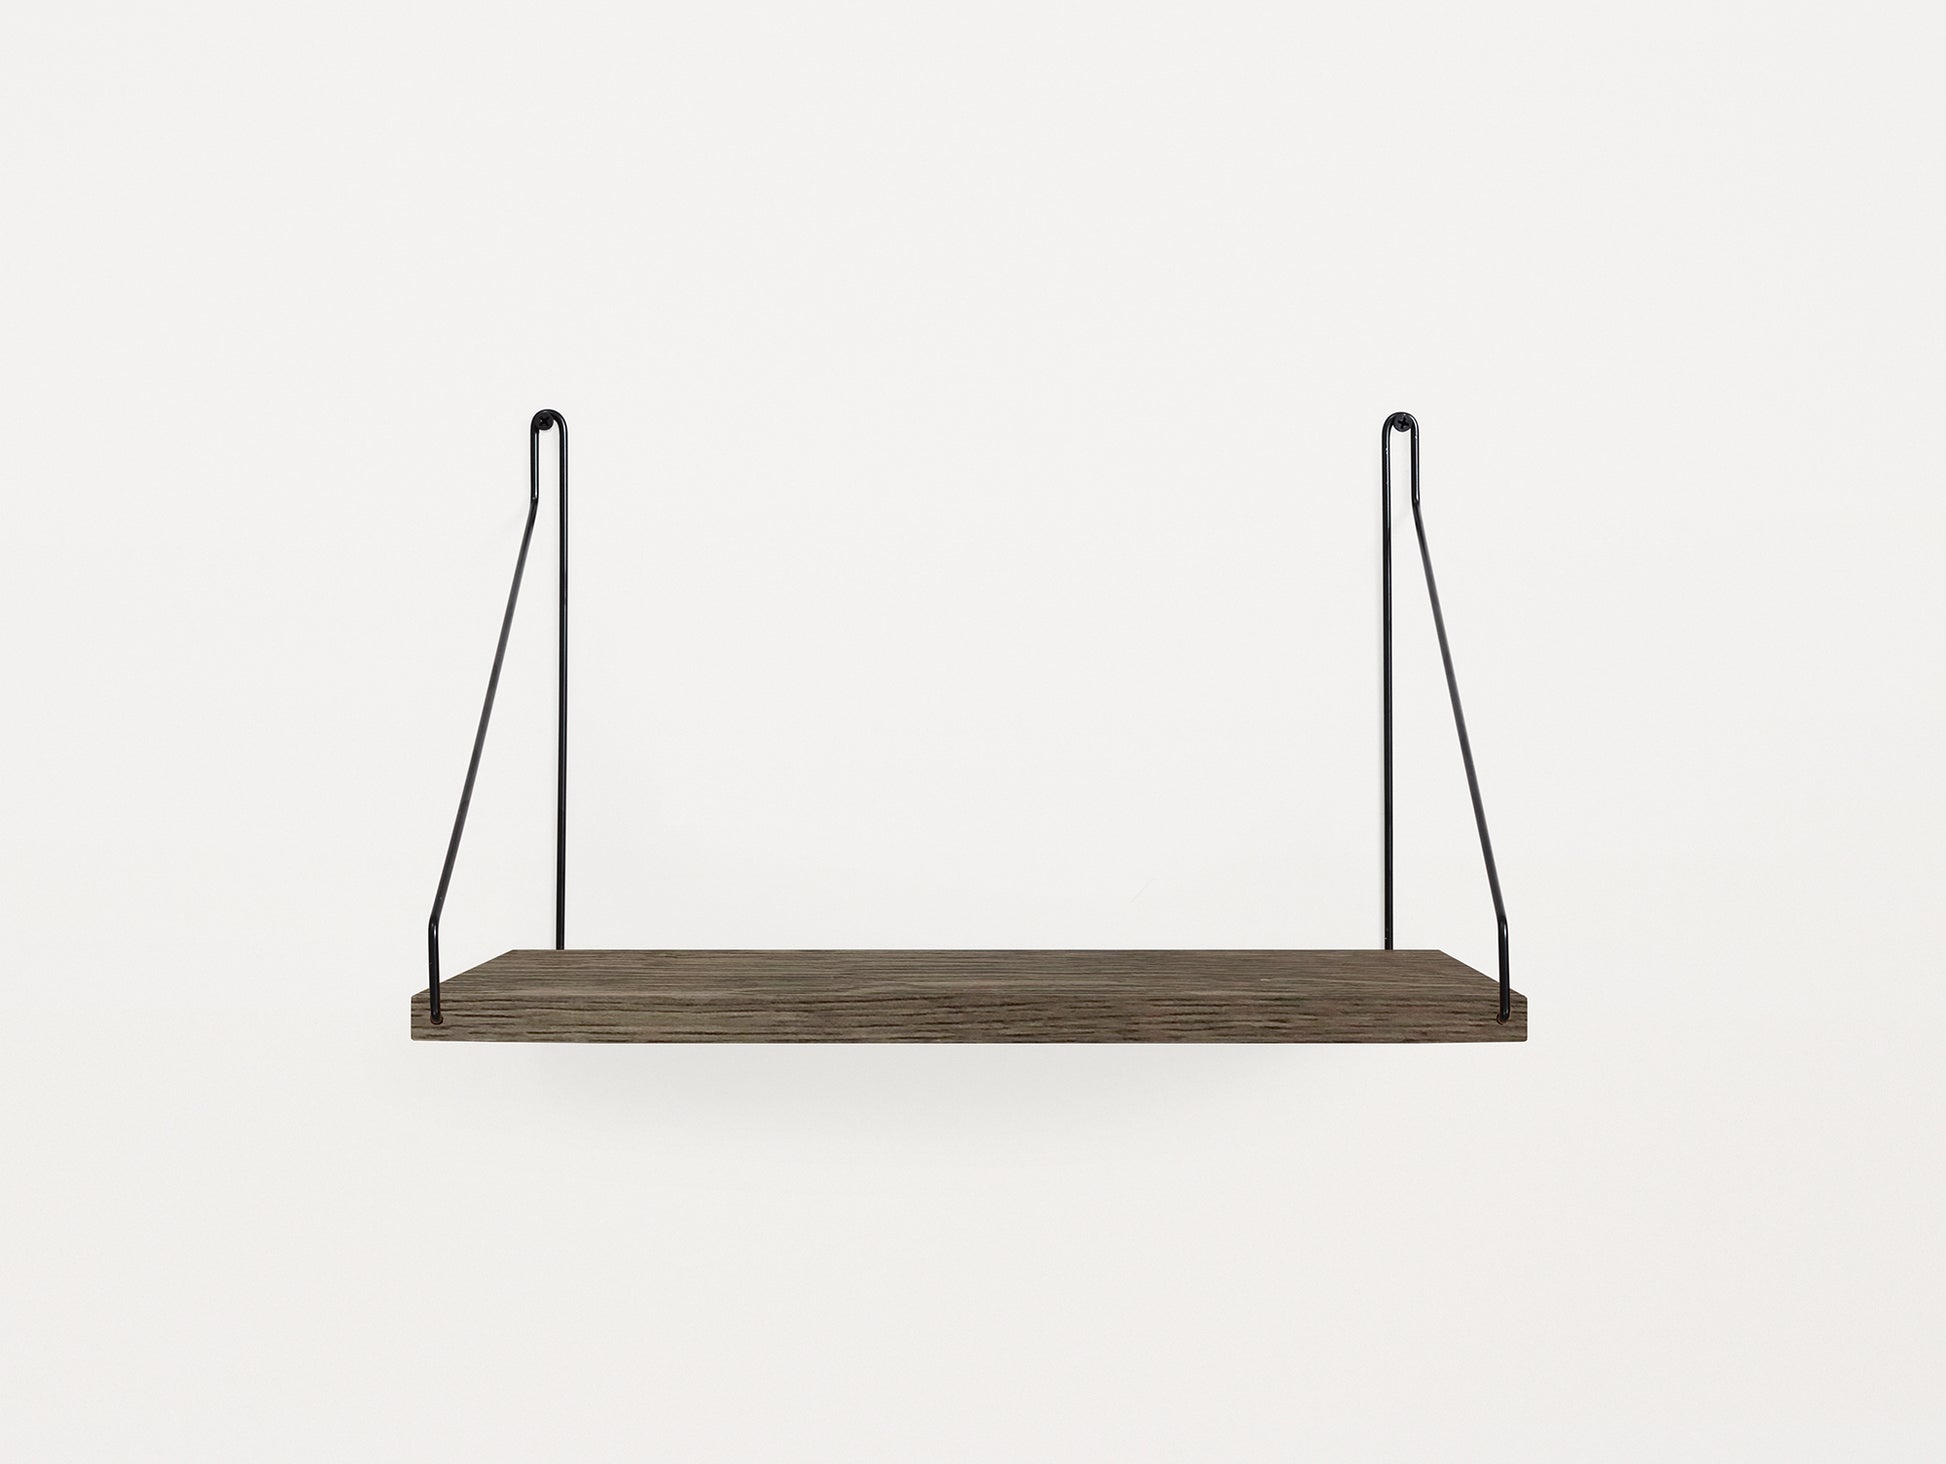 Shelf by Frama - D27 W40 / Dark Stained Oak / Black Steel  Brackets